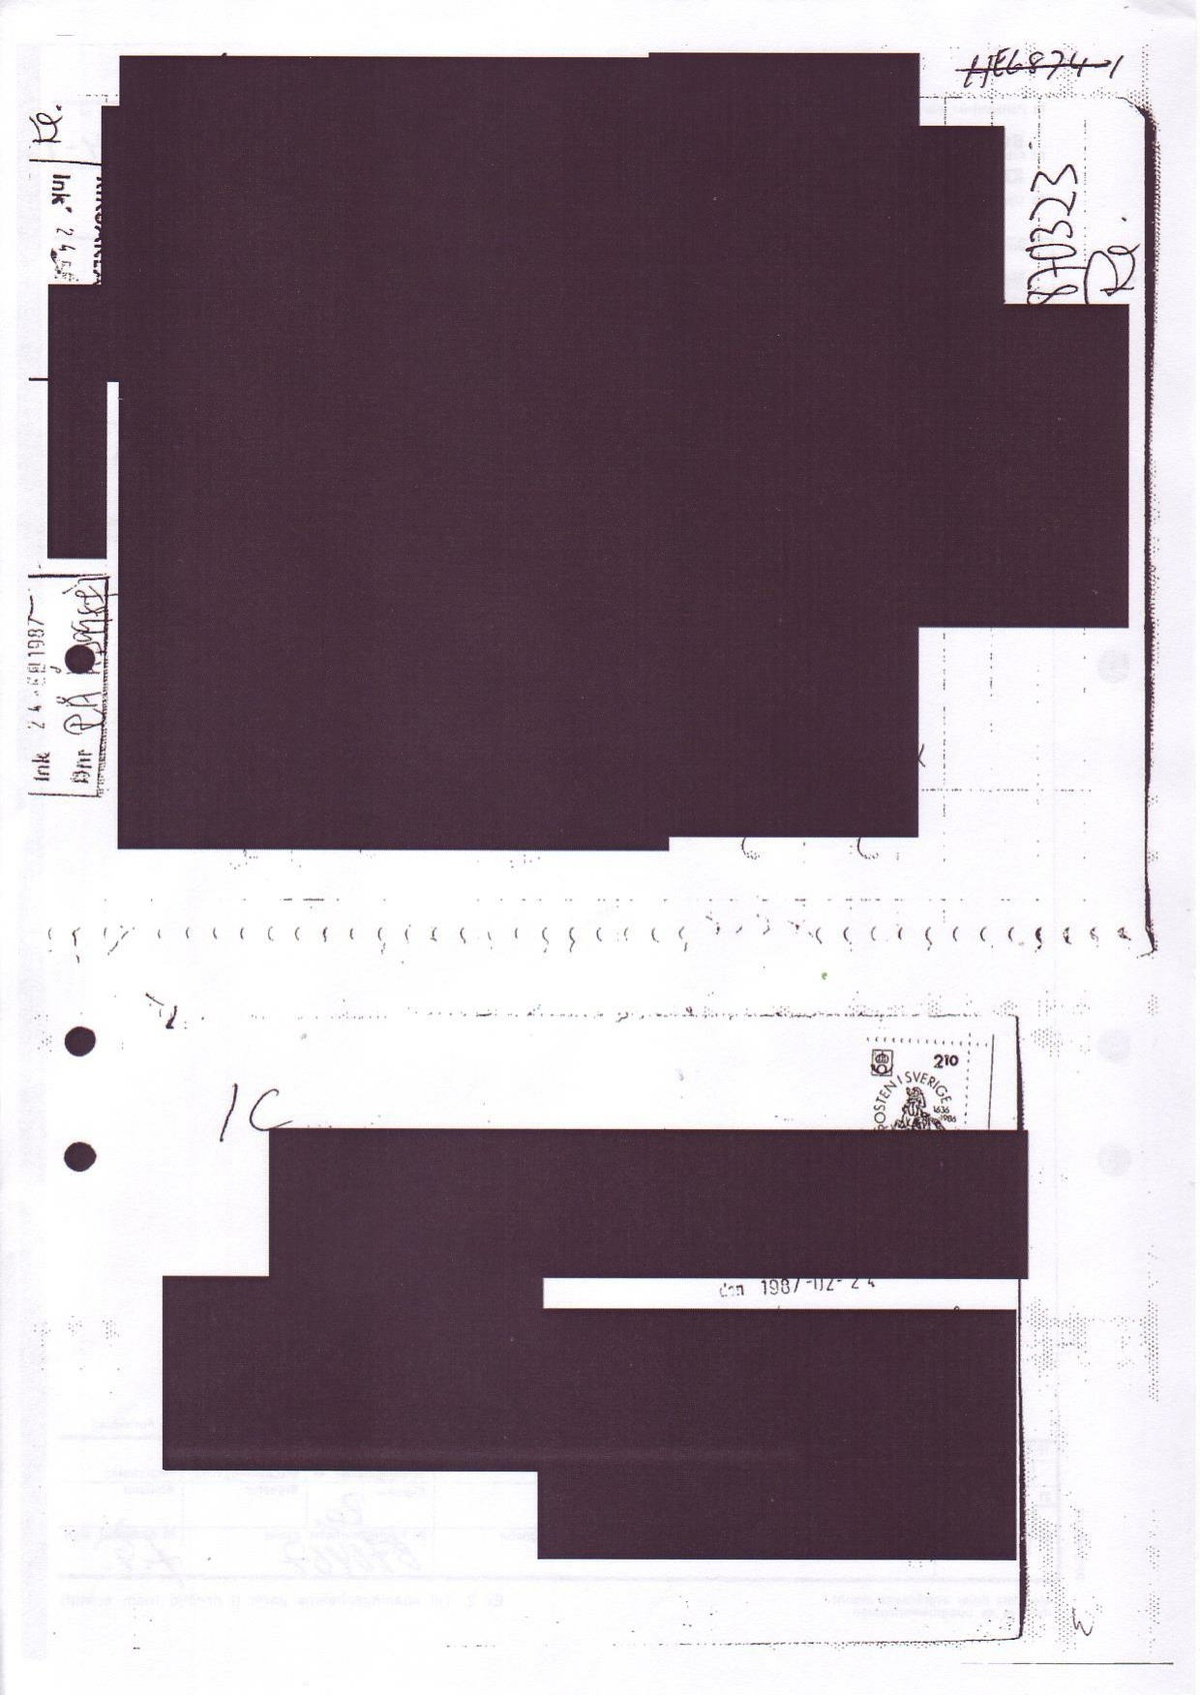 Pol-1987-03-23 HE6874-01 Om planering av mordet från Folkets Domstol.pdf